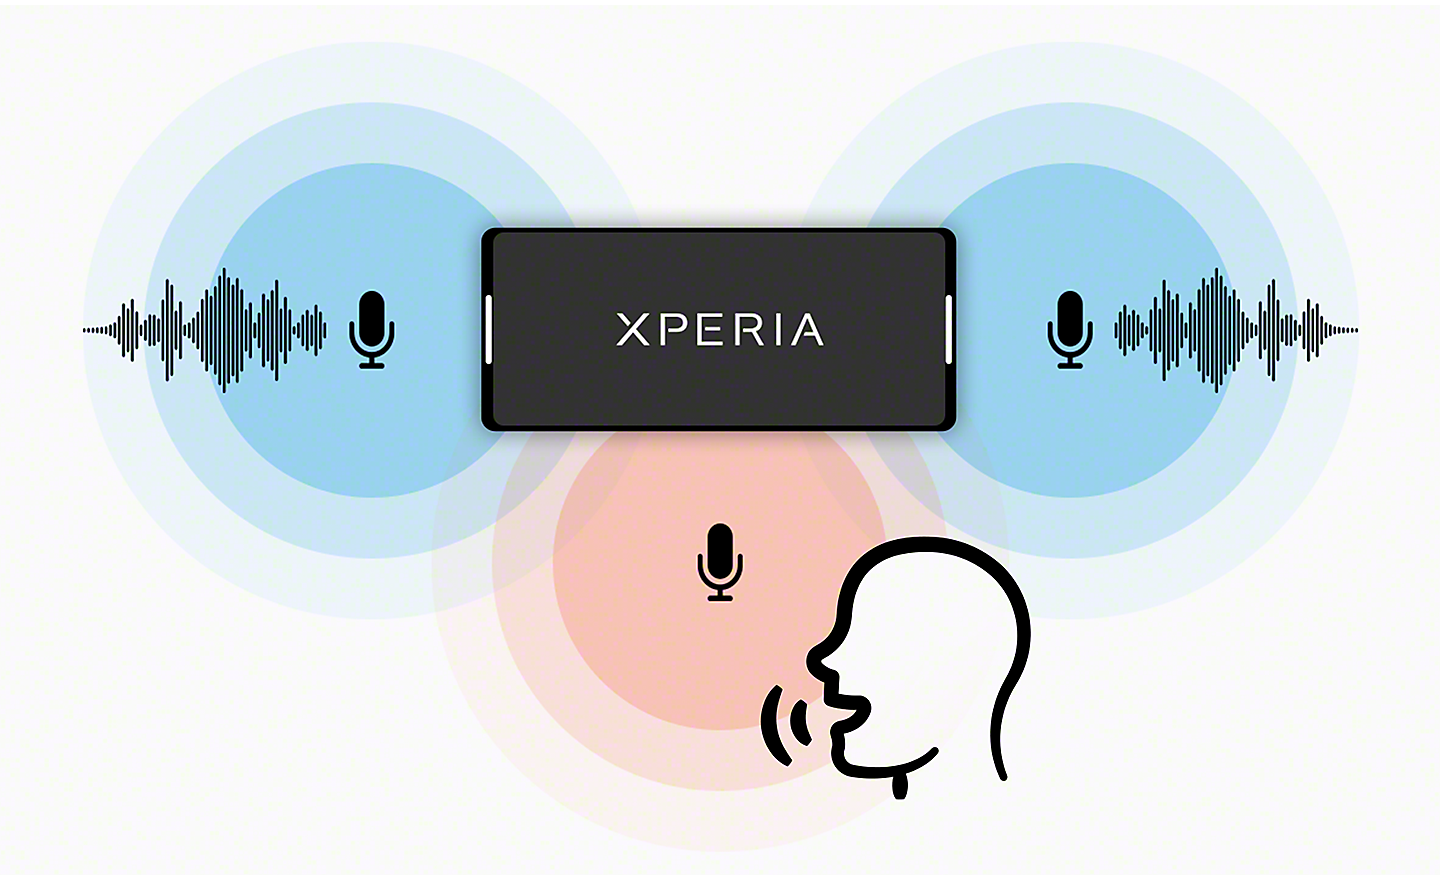 Hình minh họa cho thấy Xperia với micrô âm thanh nổi, cùng với micrô đơn âm đang ghi âm bài phát biểu